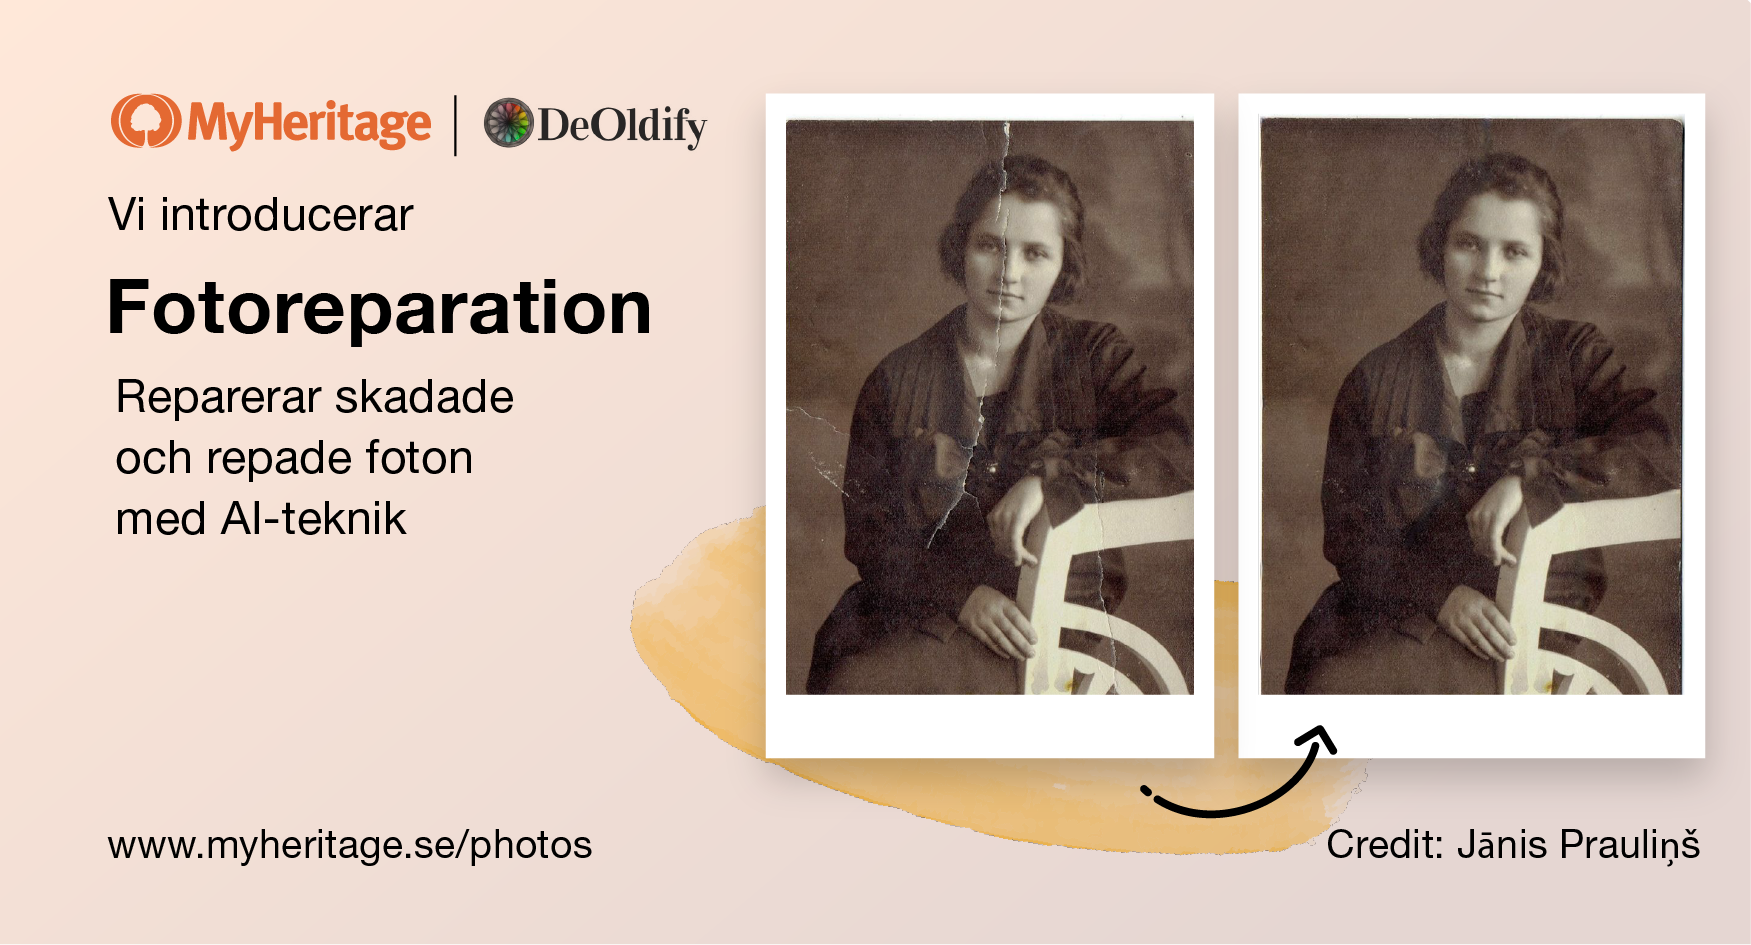 Vi introducerar Fotoreparation: en ny funktion som magiskt fixar repade och skadade foton